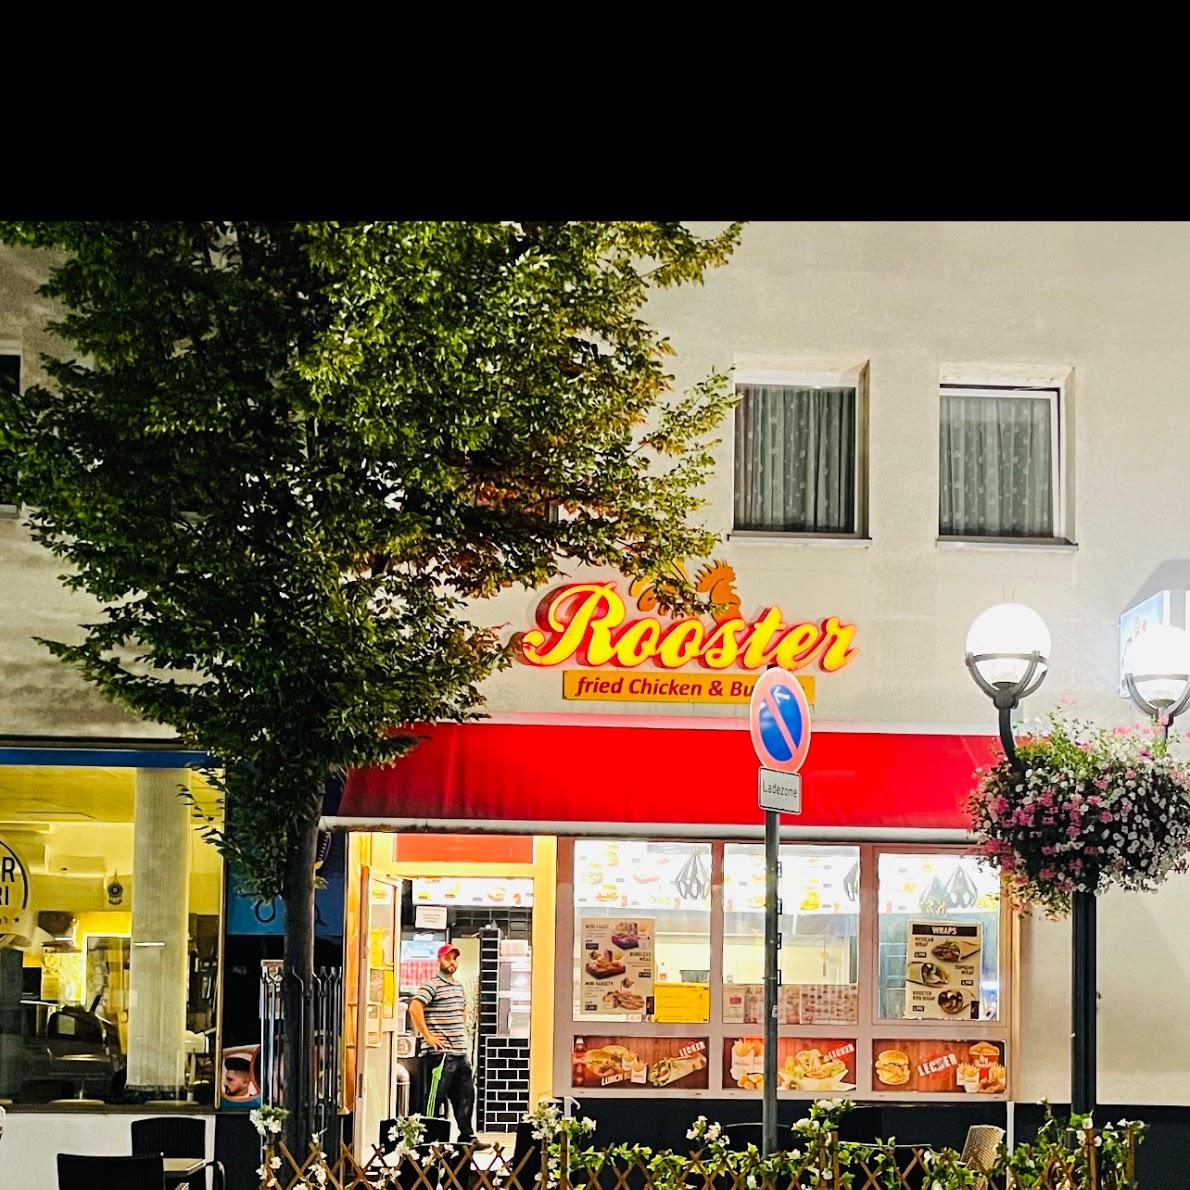 Restaurant "ROOSTER Fried Chicken" in Hanau